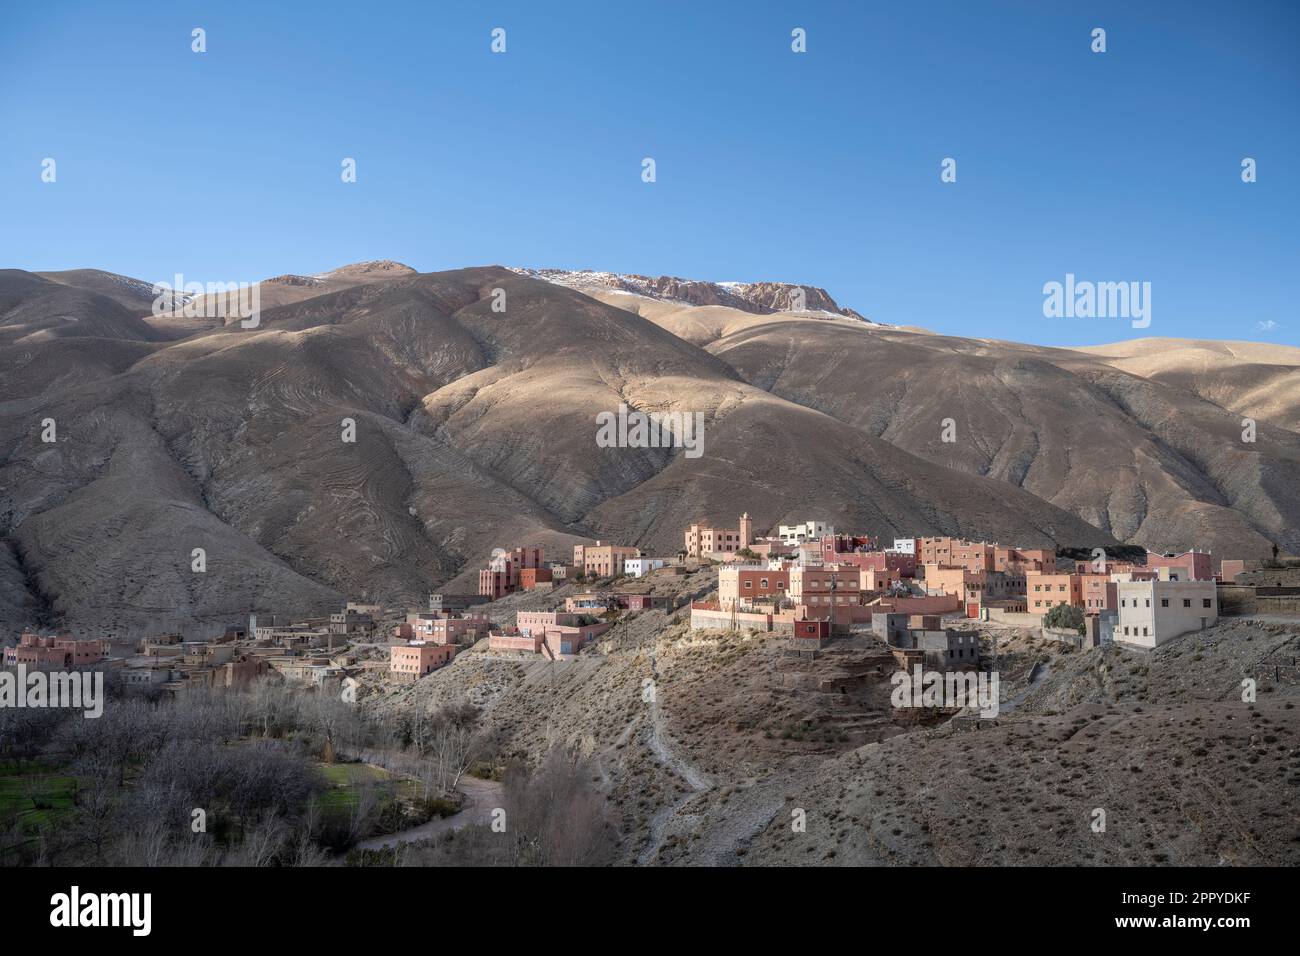 Paesaggio rurale con vista sul villaggio di Ait Hammou ou Said e le montagne circostanti deserto della Gola Dades sullo sfondo. Foto Stock